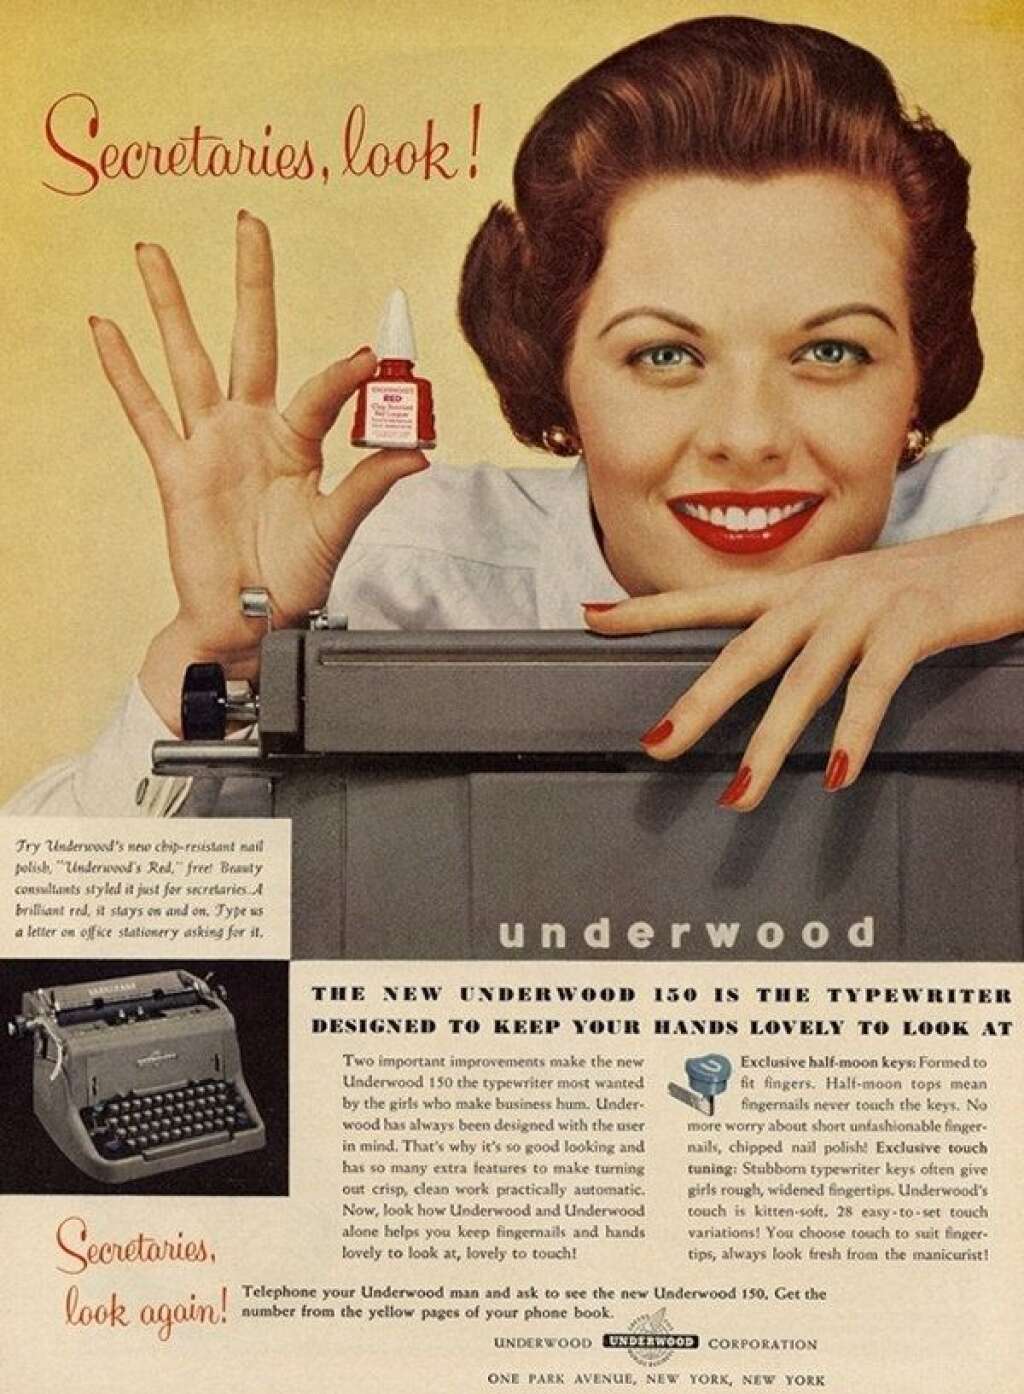 Underwood - "Secrétaire, regardez !" "La nouvelle machine à écrire Underwood est spécialement conçue pour garder vos mains belles à regarder !". Par contre pour notre cerveau, Underwood n'a pas de recettes...